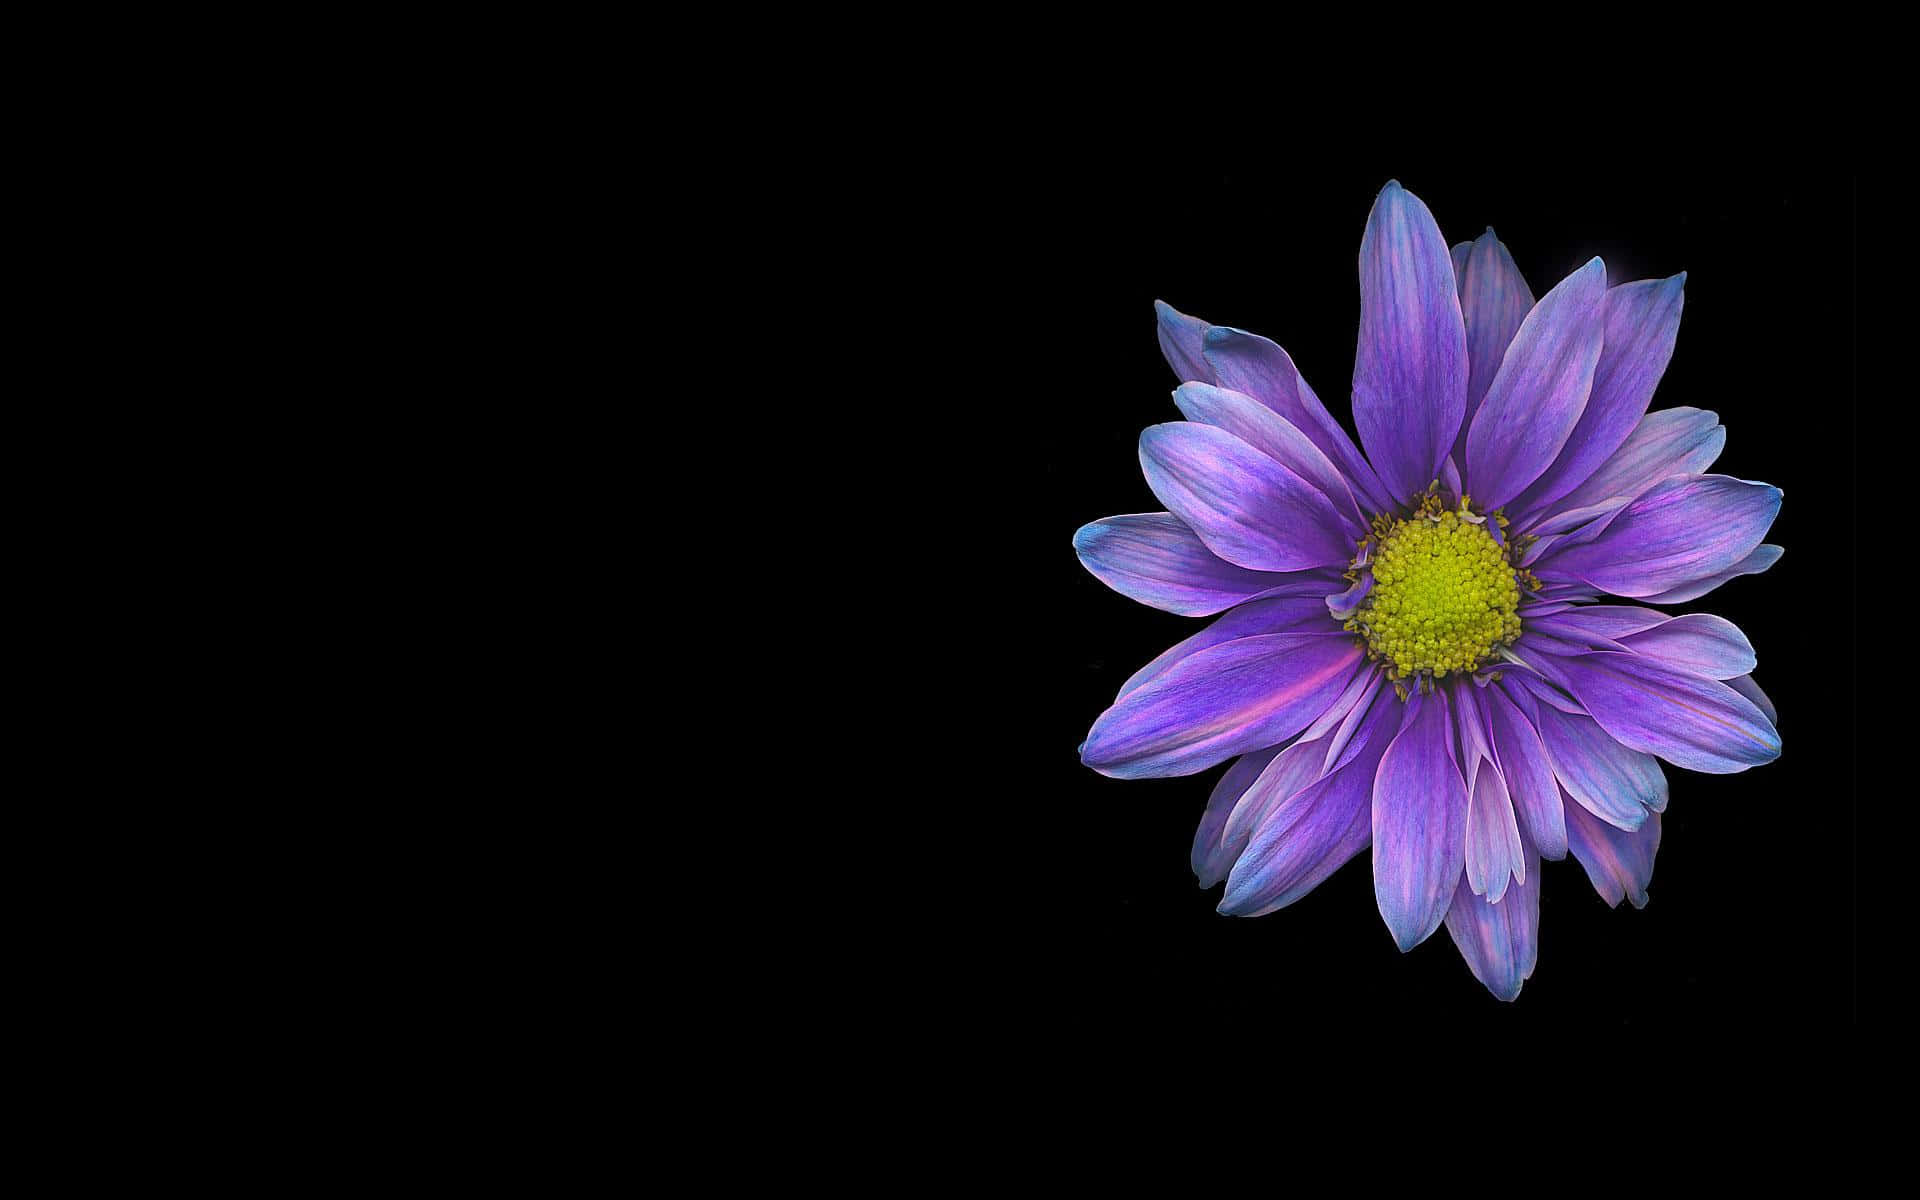 Daisyschwarzer Lila Blumen-hintergrund